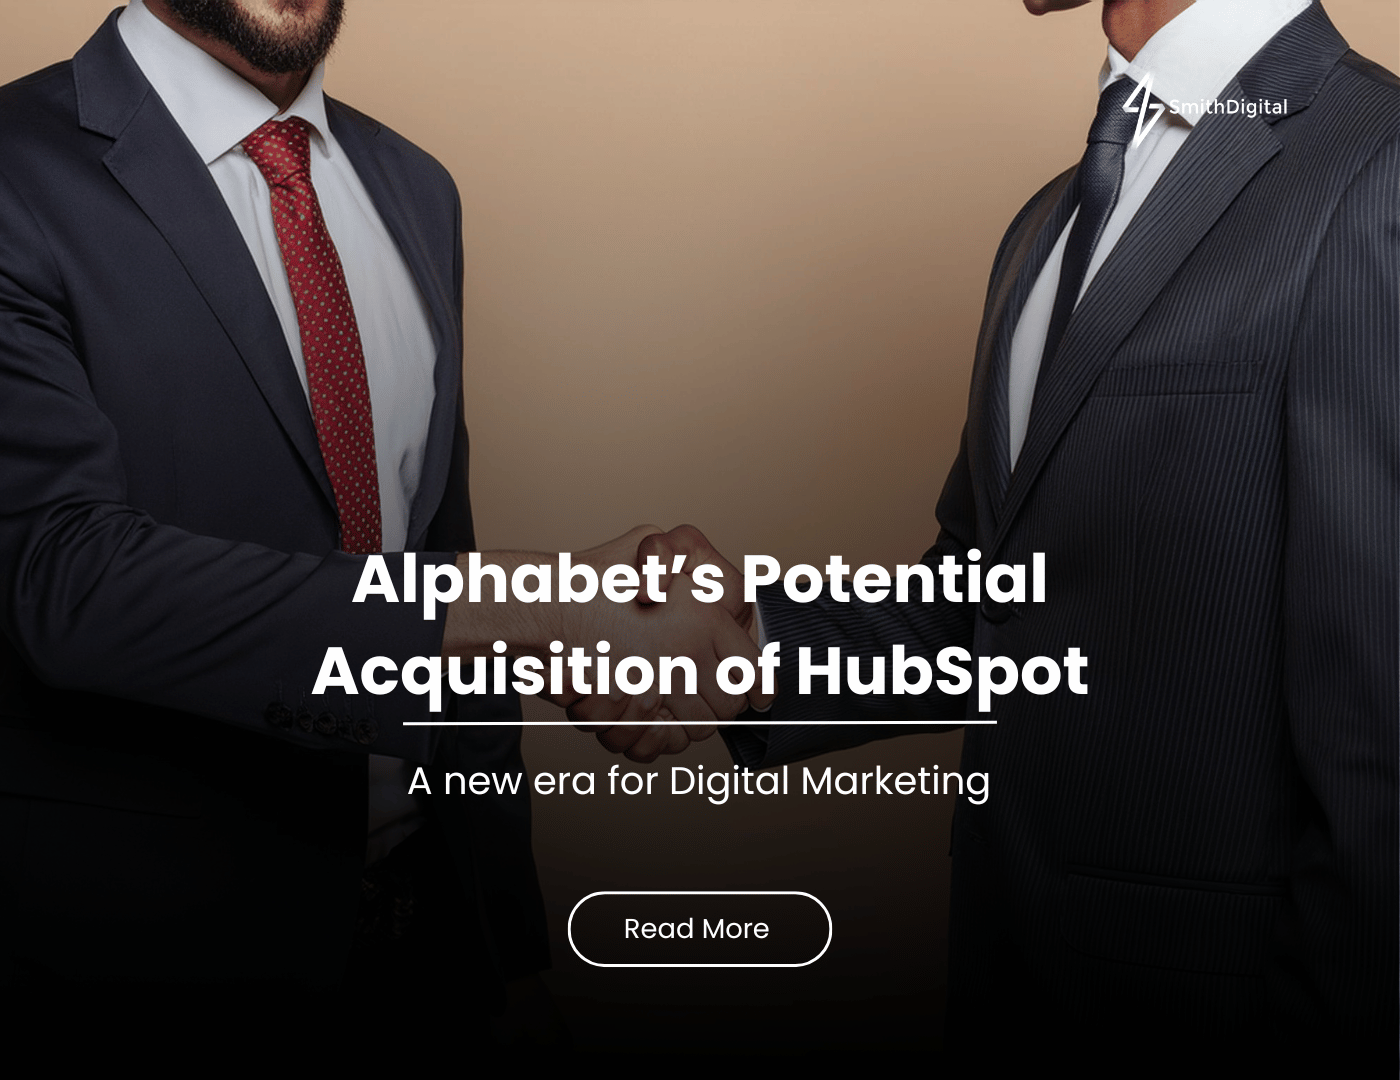 hubspot and google merger